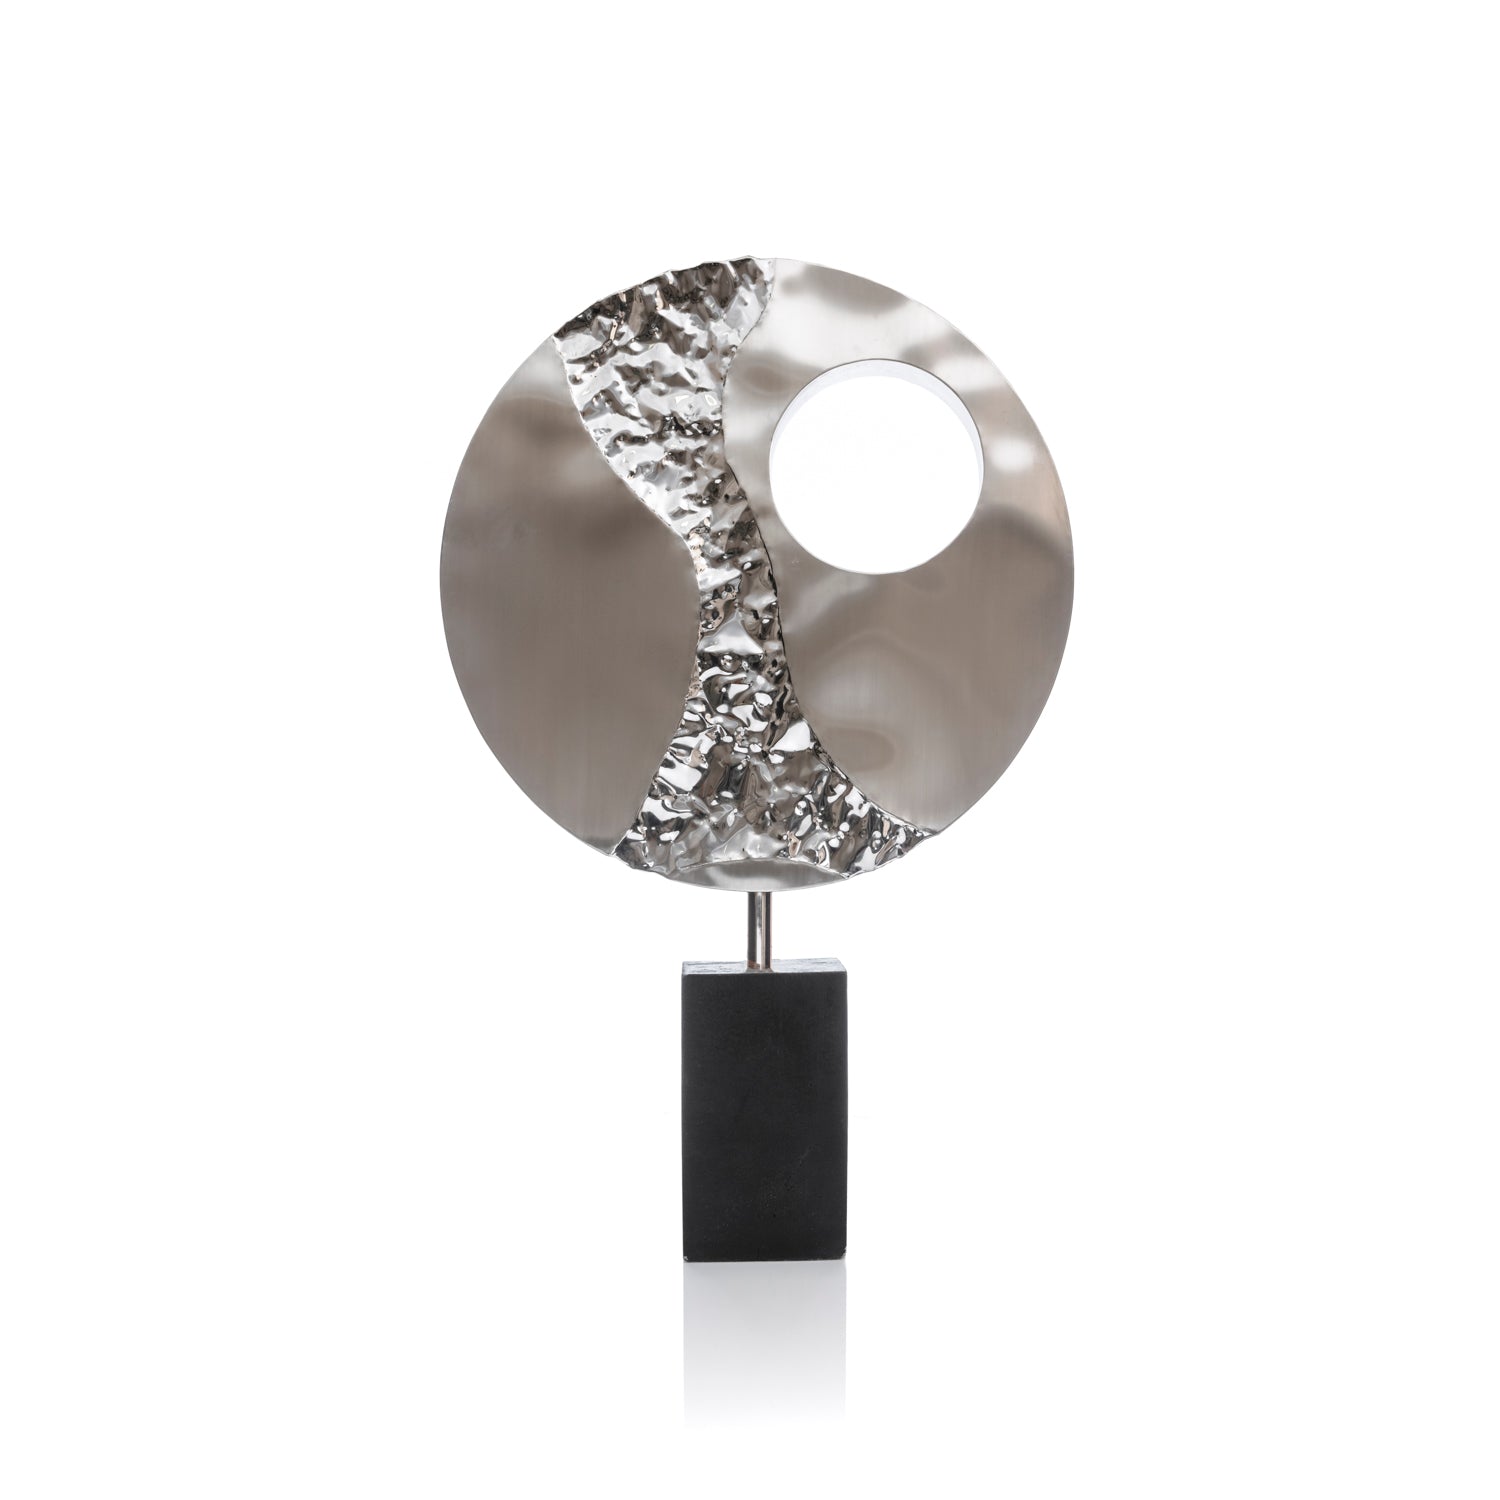 Struttura cerchio in acciaio con particolari decorativi - Asmat Design